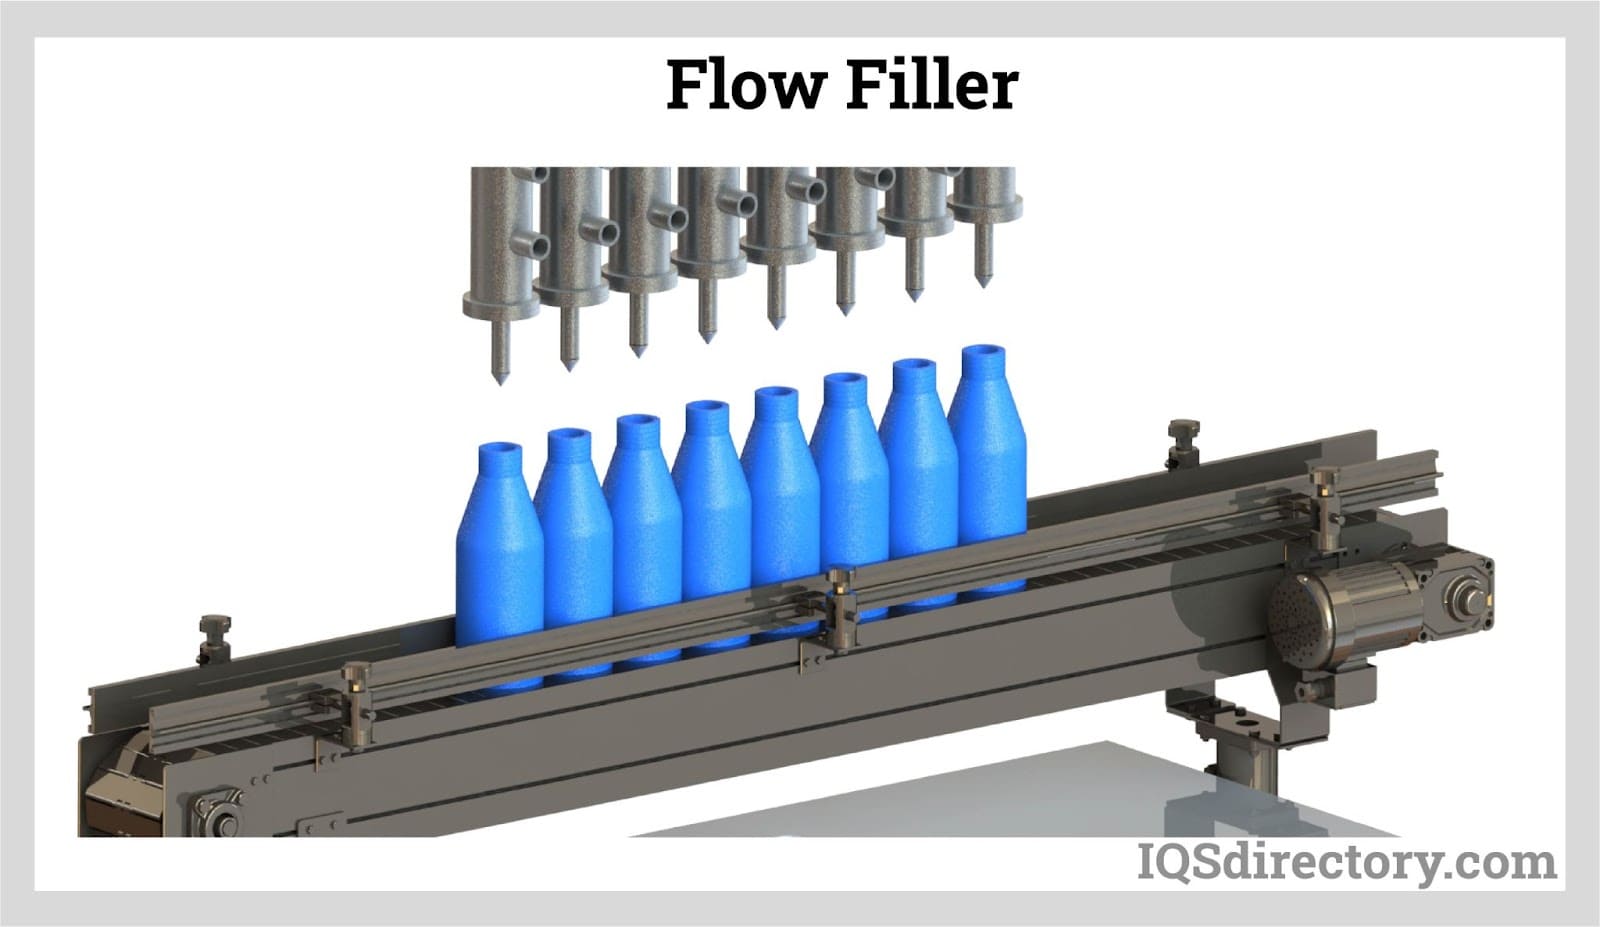 Flow Filler